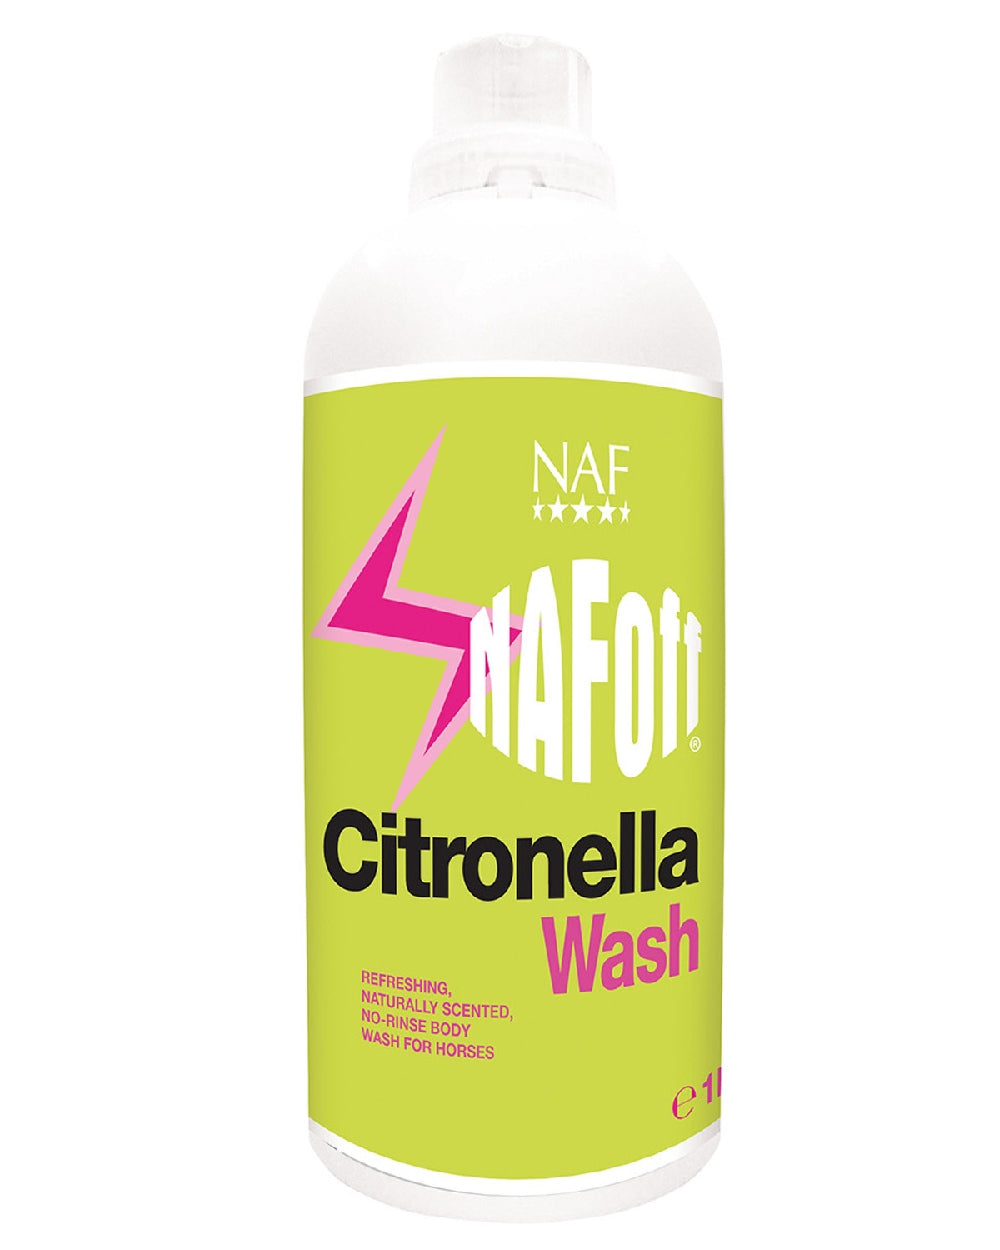 NAF Off Citronella Wash 1lt on white background